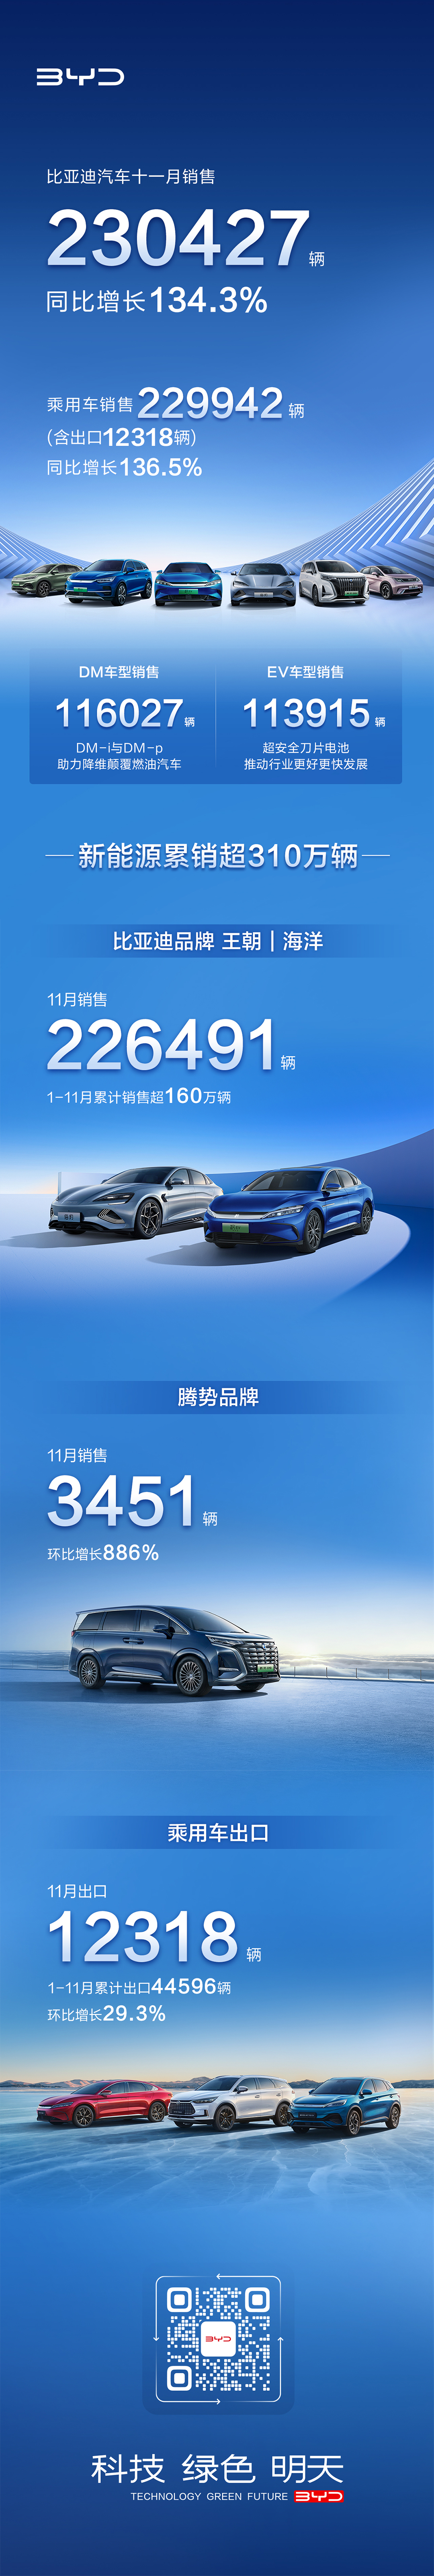 比亚迪汽车11月销售230427辆（含乘用车出口12318辆），同比增长134.3%